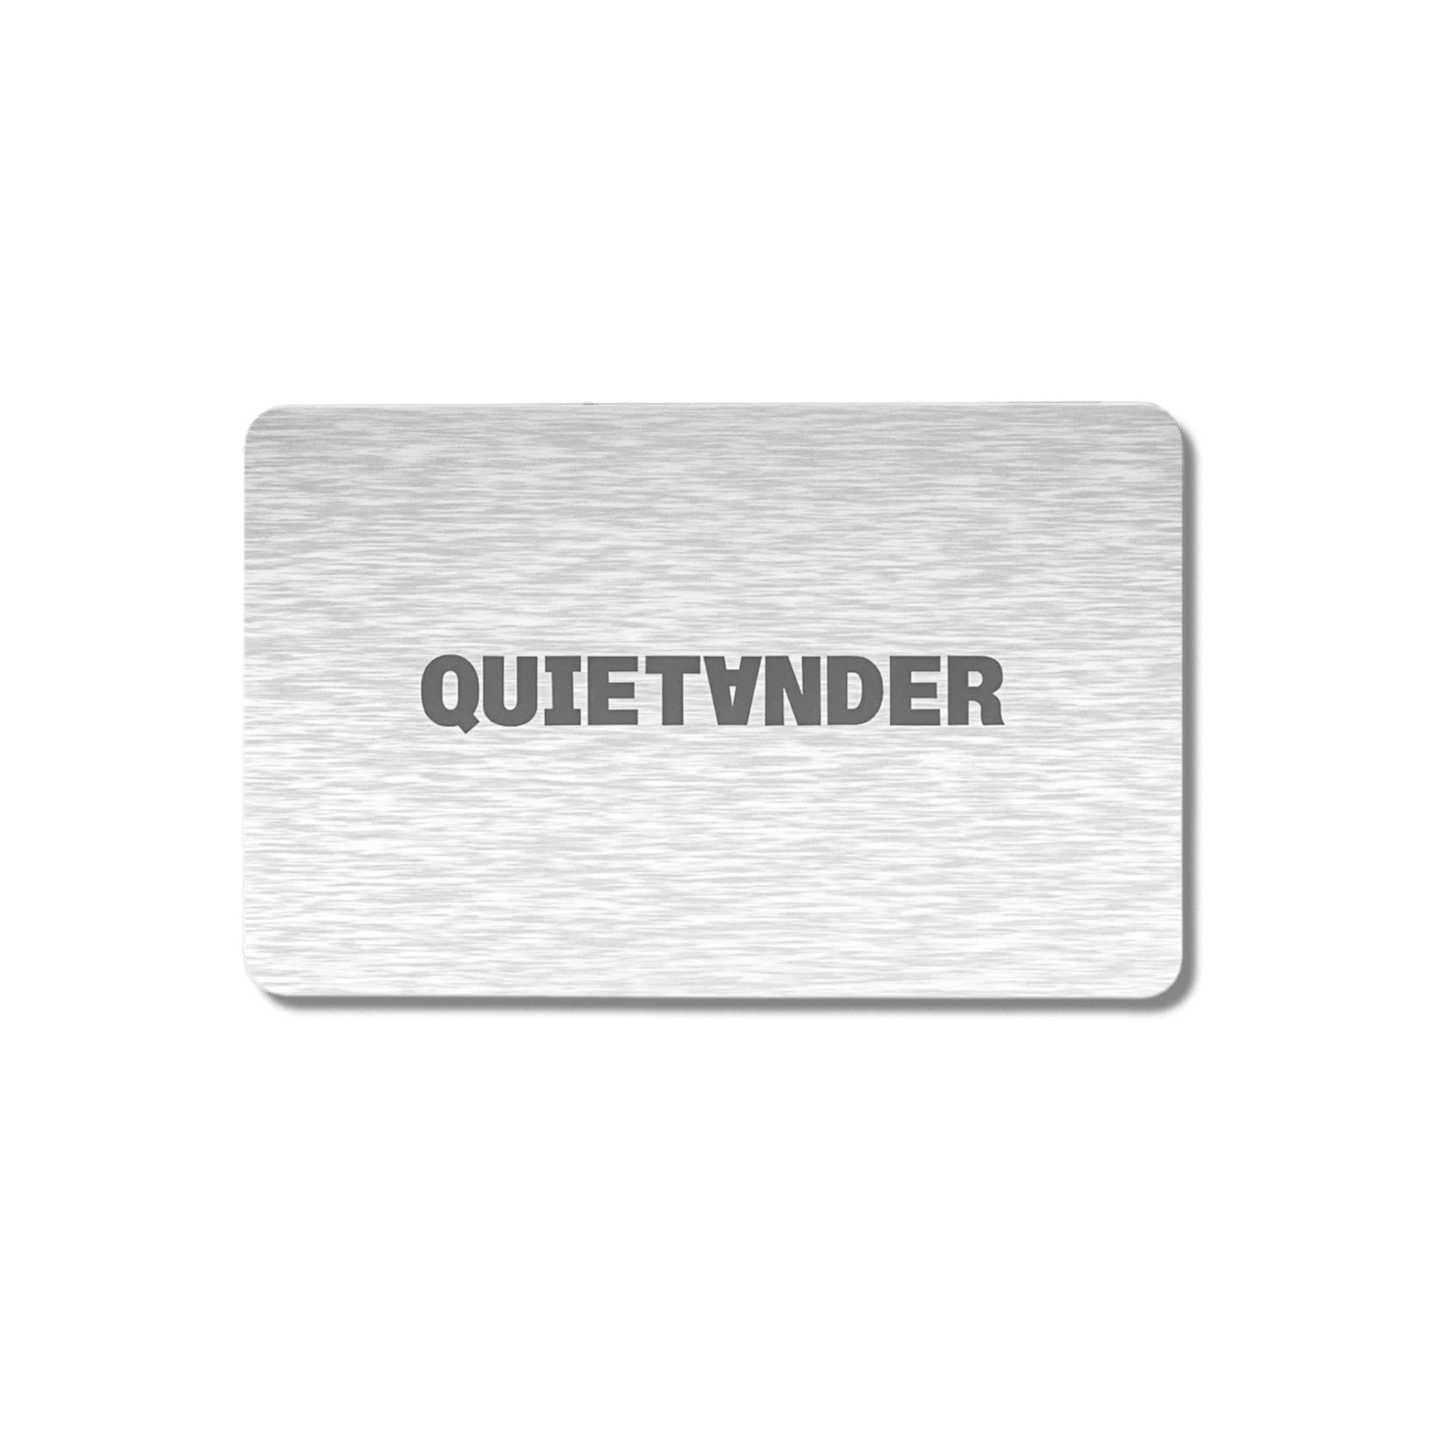 QUIET ANDER GIFT CARD - Quiet AnderQuiet Ander